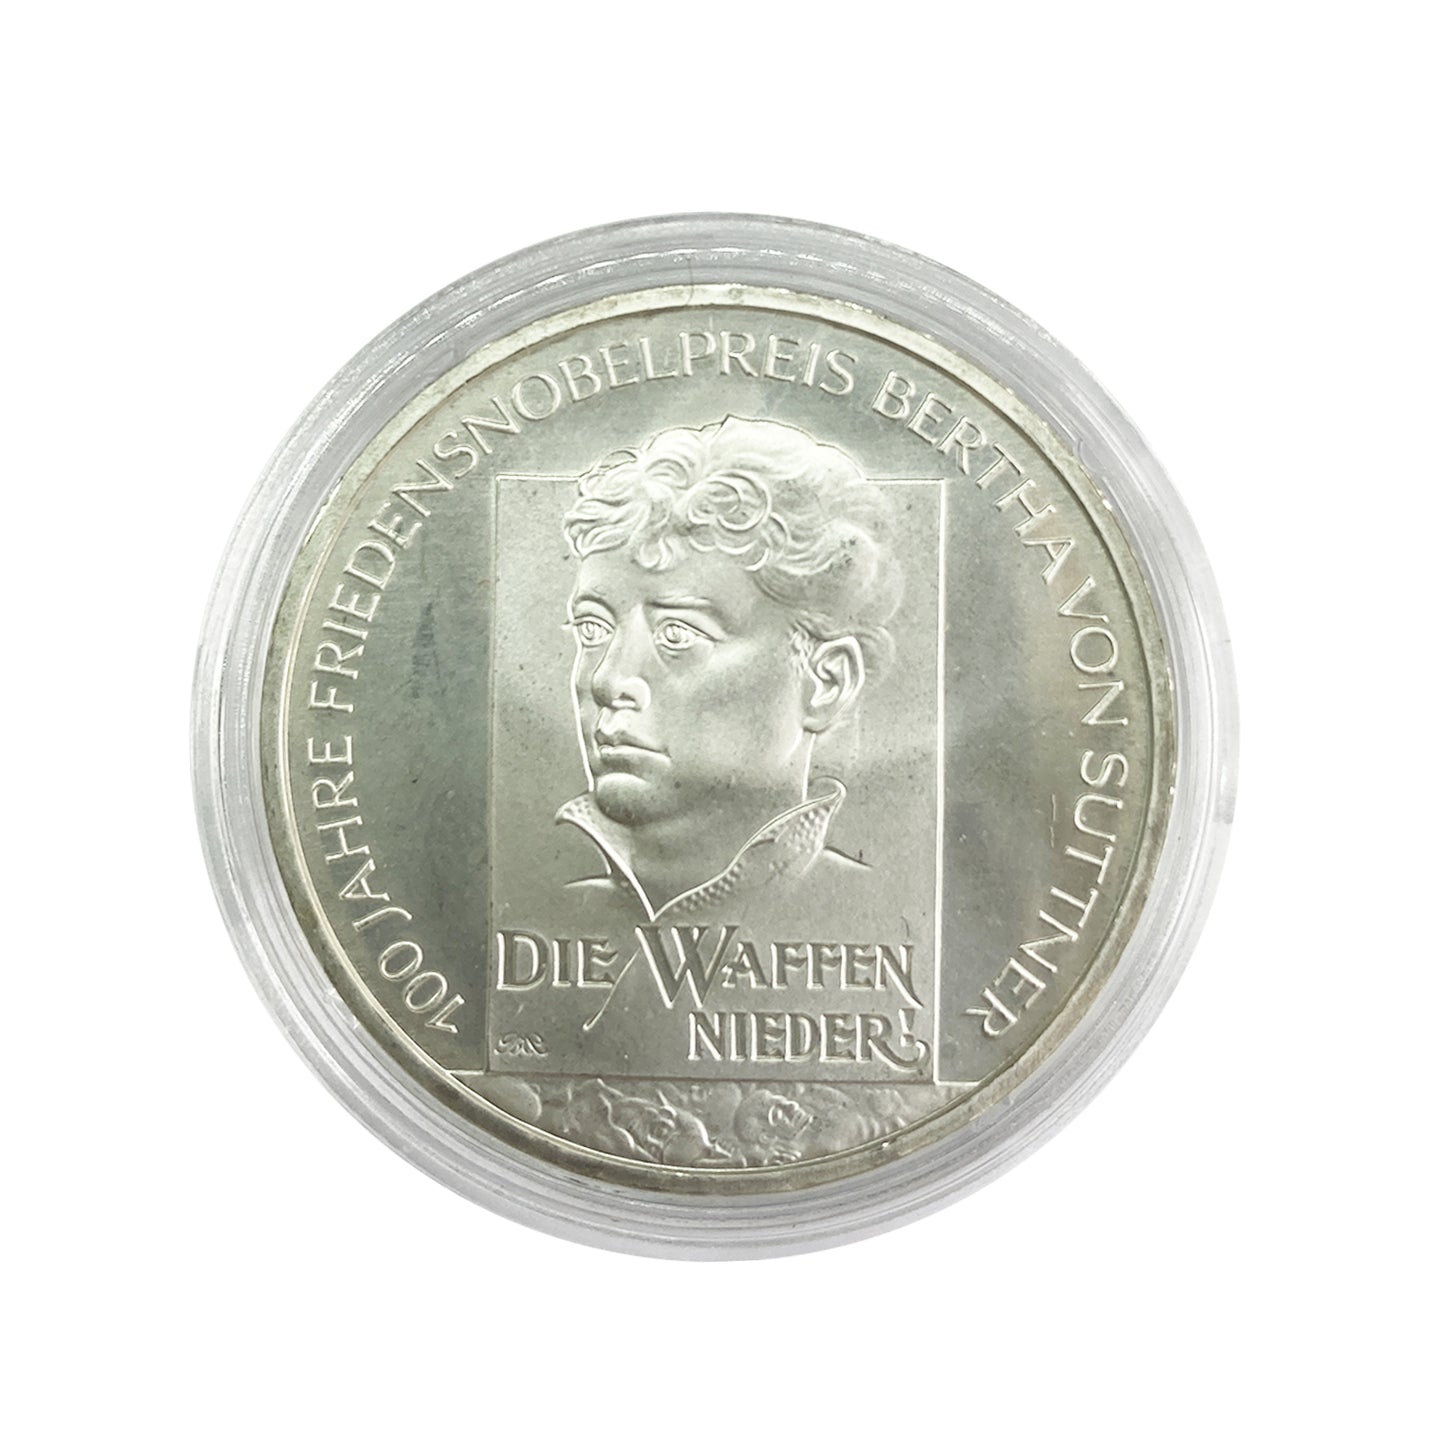 Alemania - Moneda 10 euros plata 2005 - Bertha von Suttner